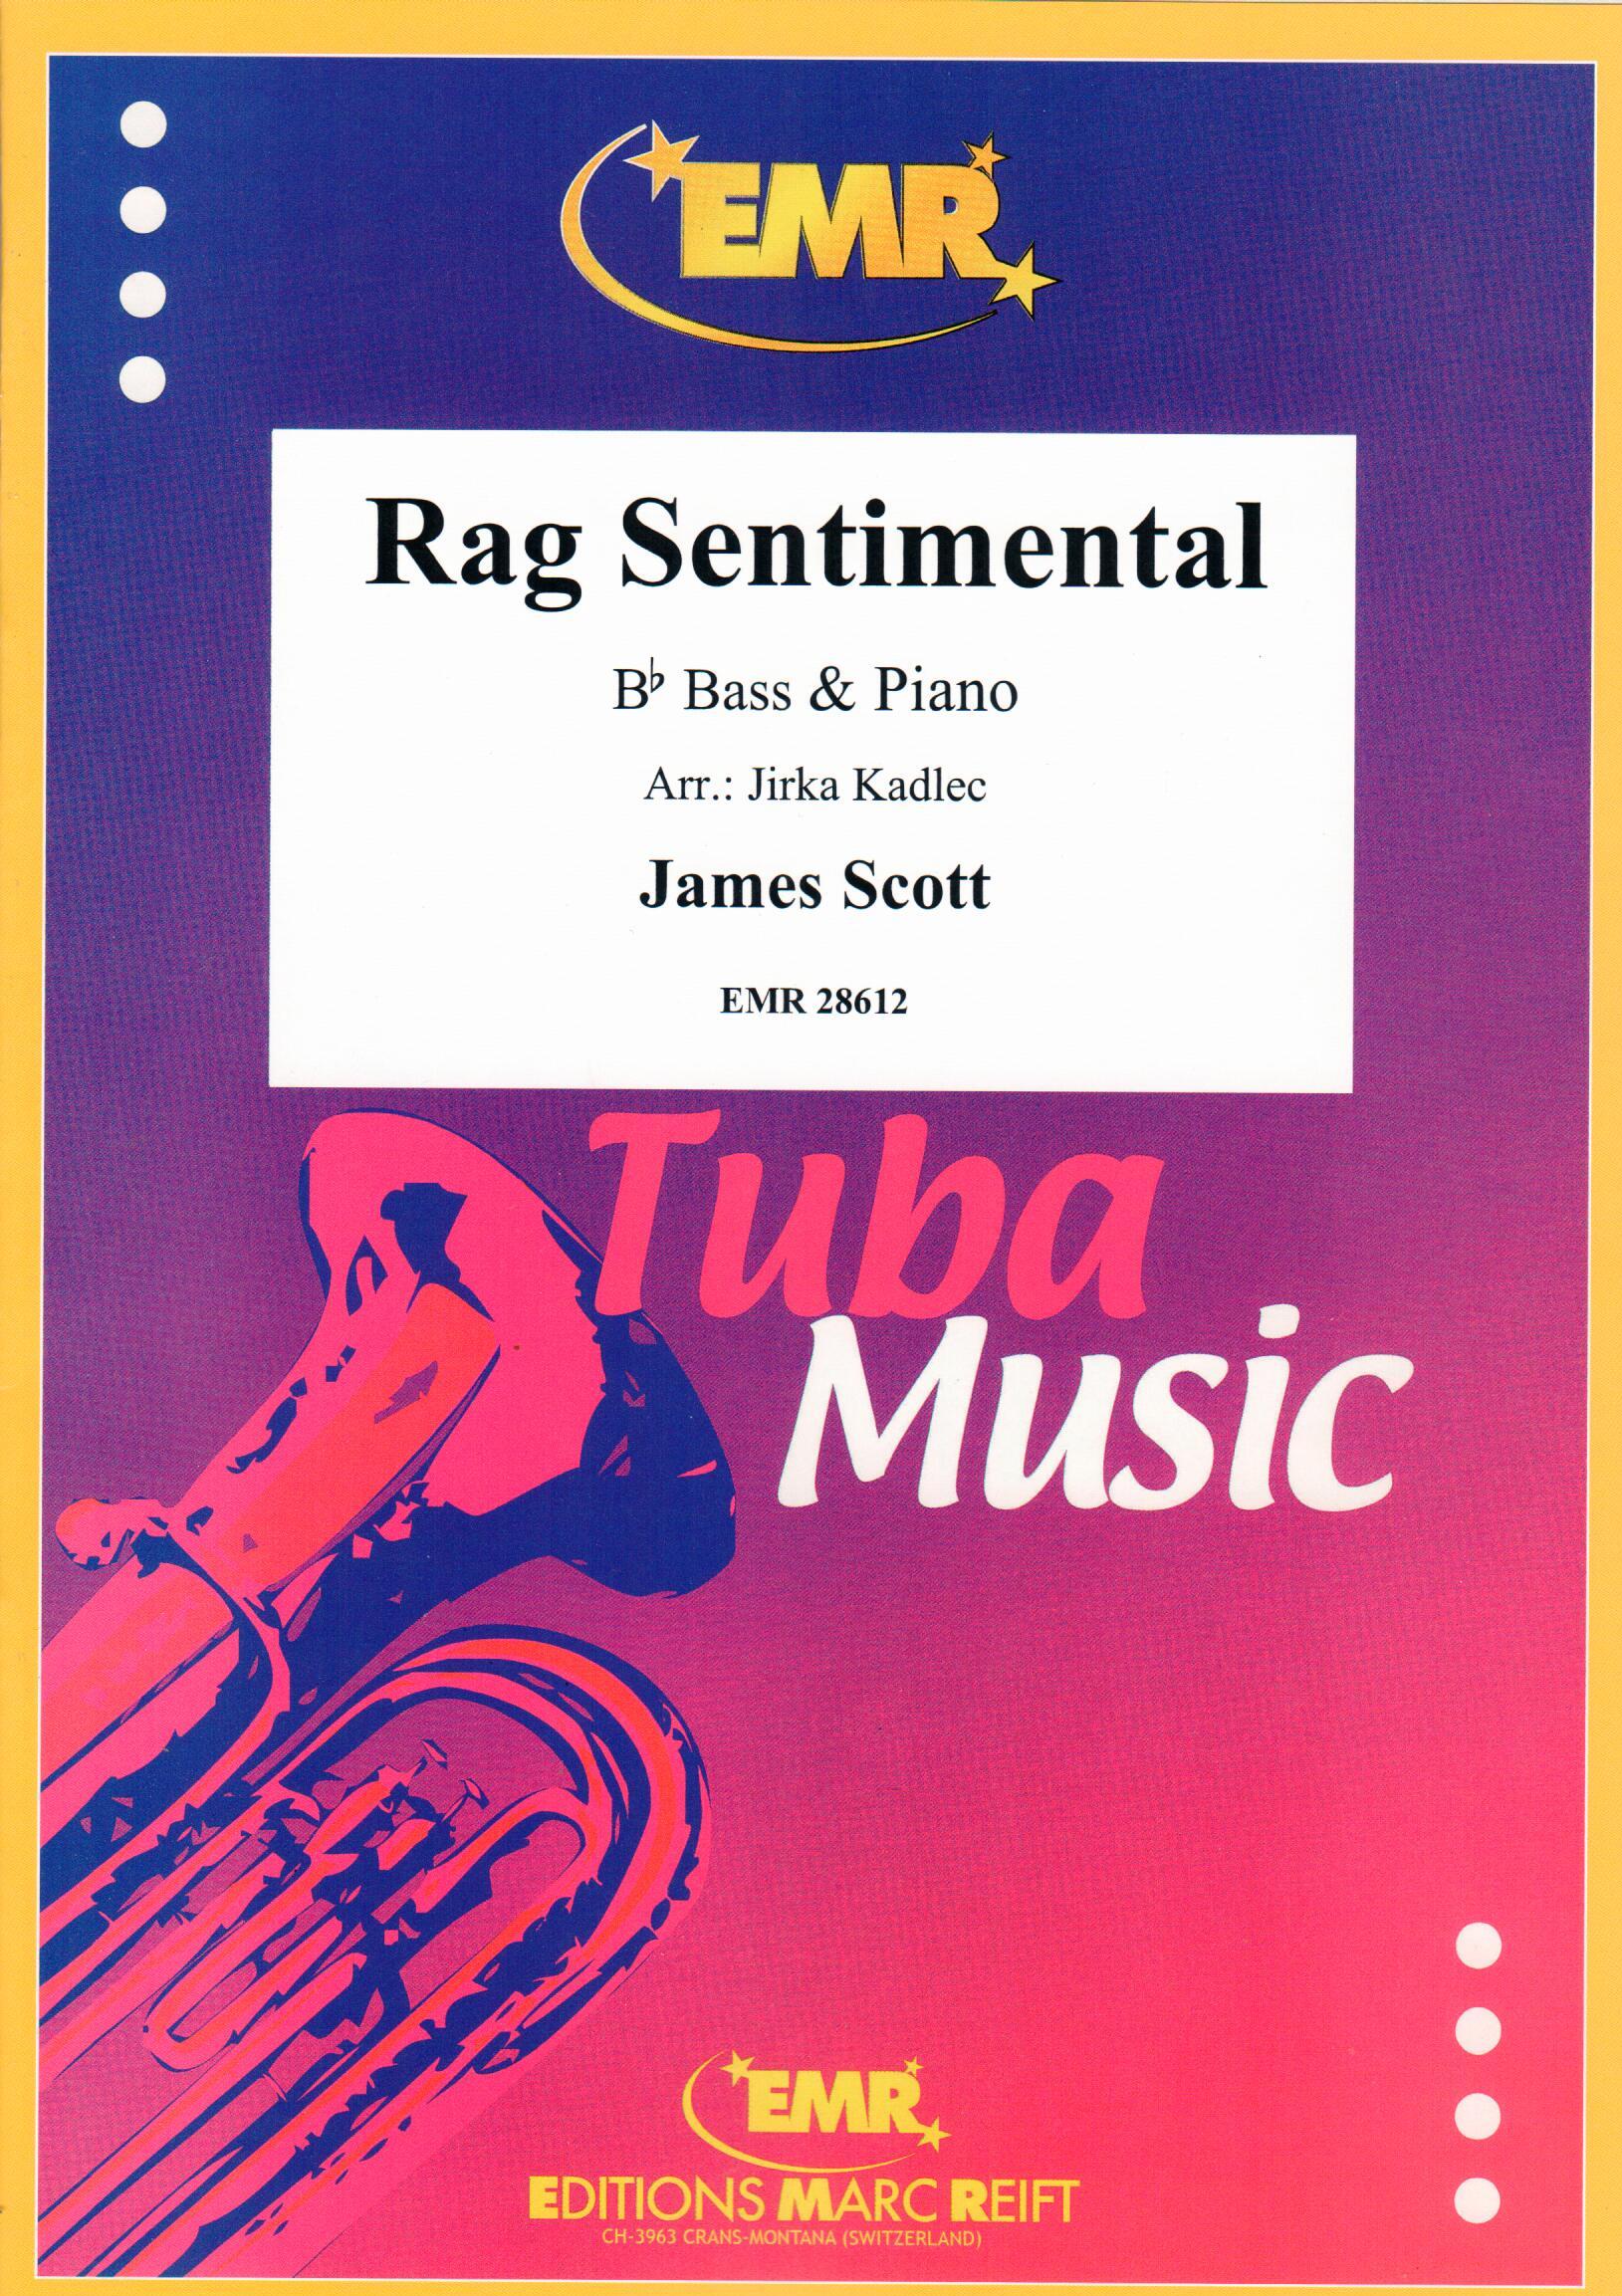 RAG SENTIMENTAL, SOLOS - E♭. Bass